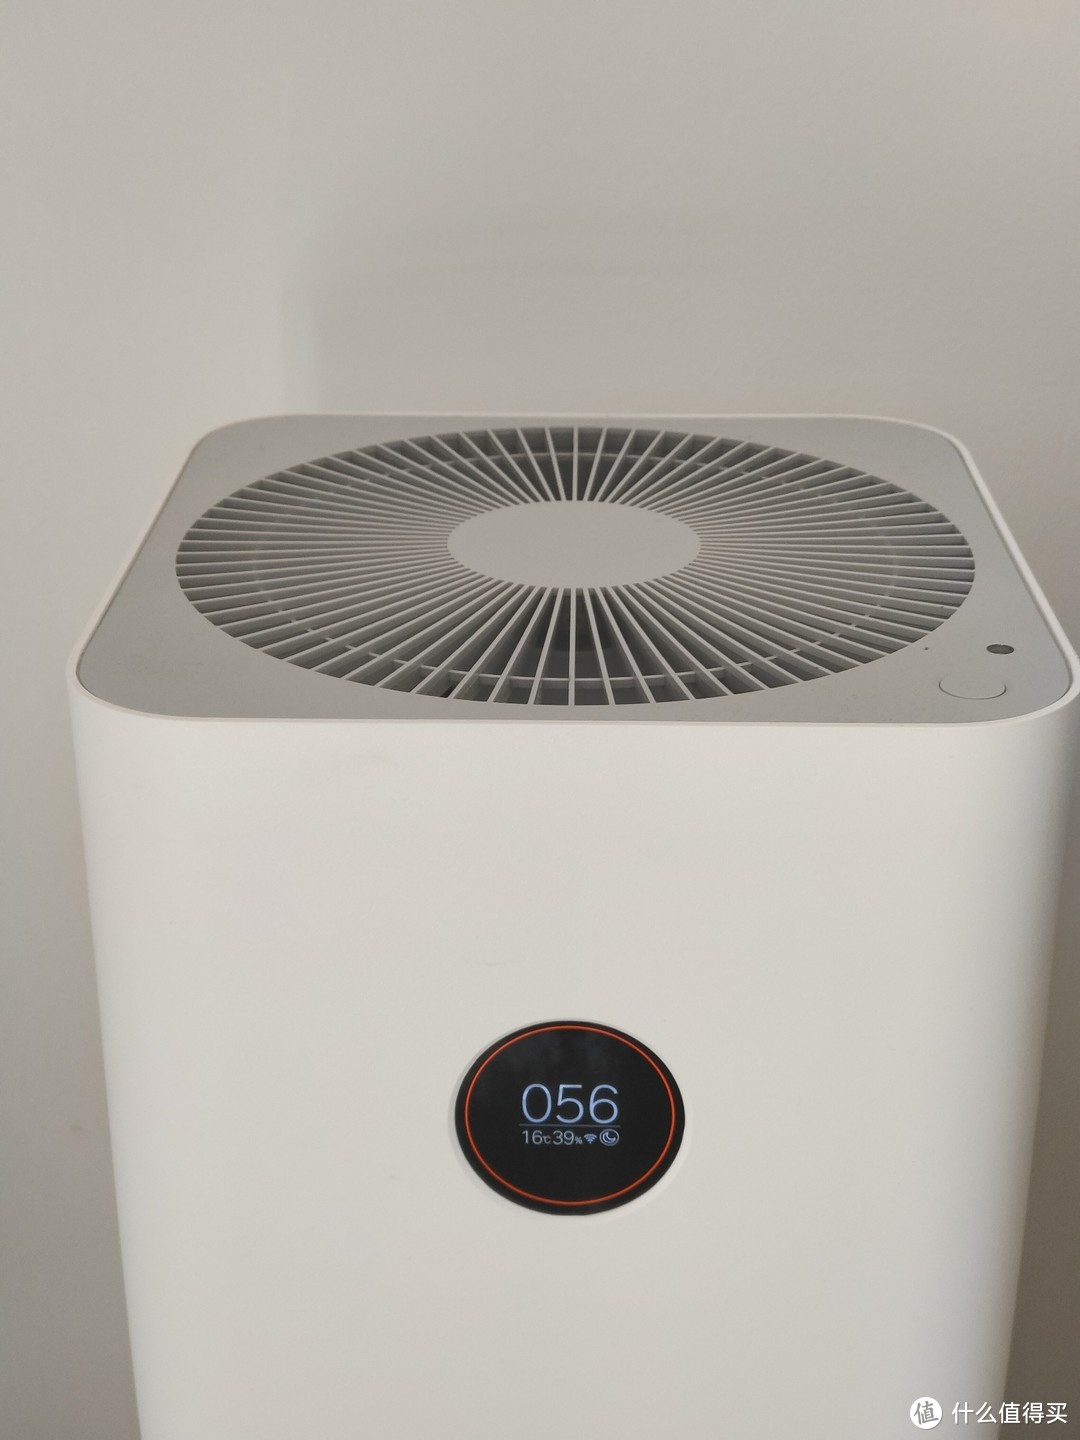 小米米家空气净化器4 Pro适合每个搬新家的人使用。